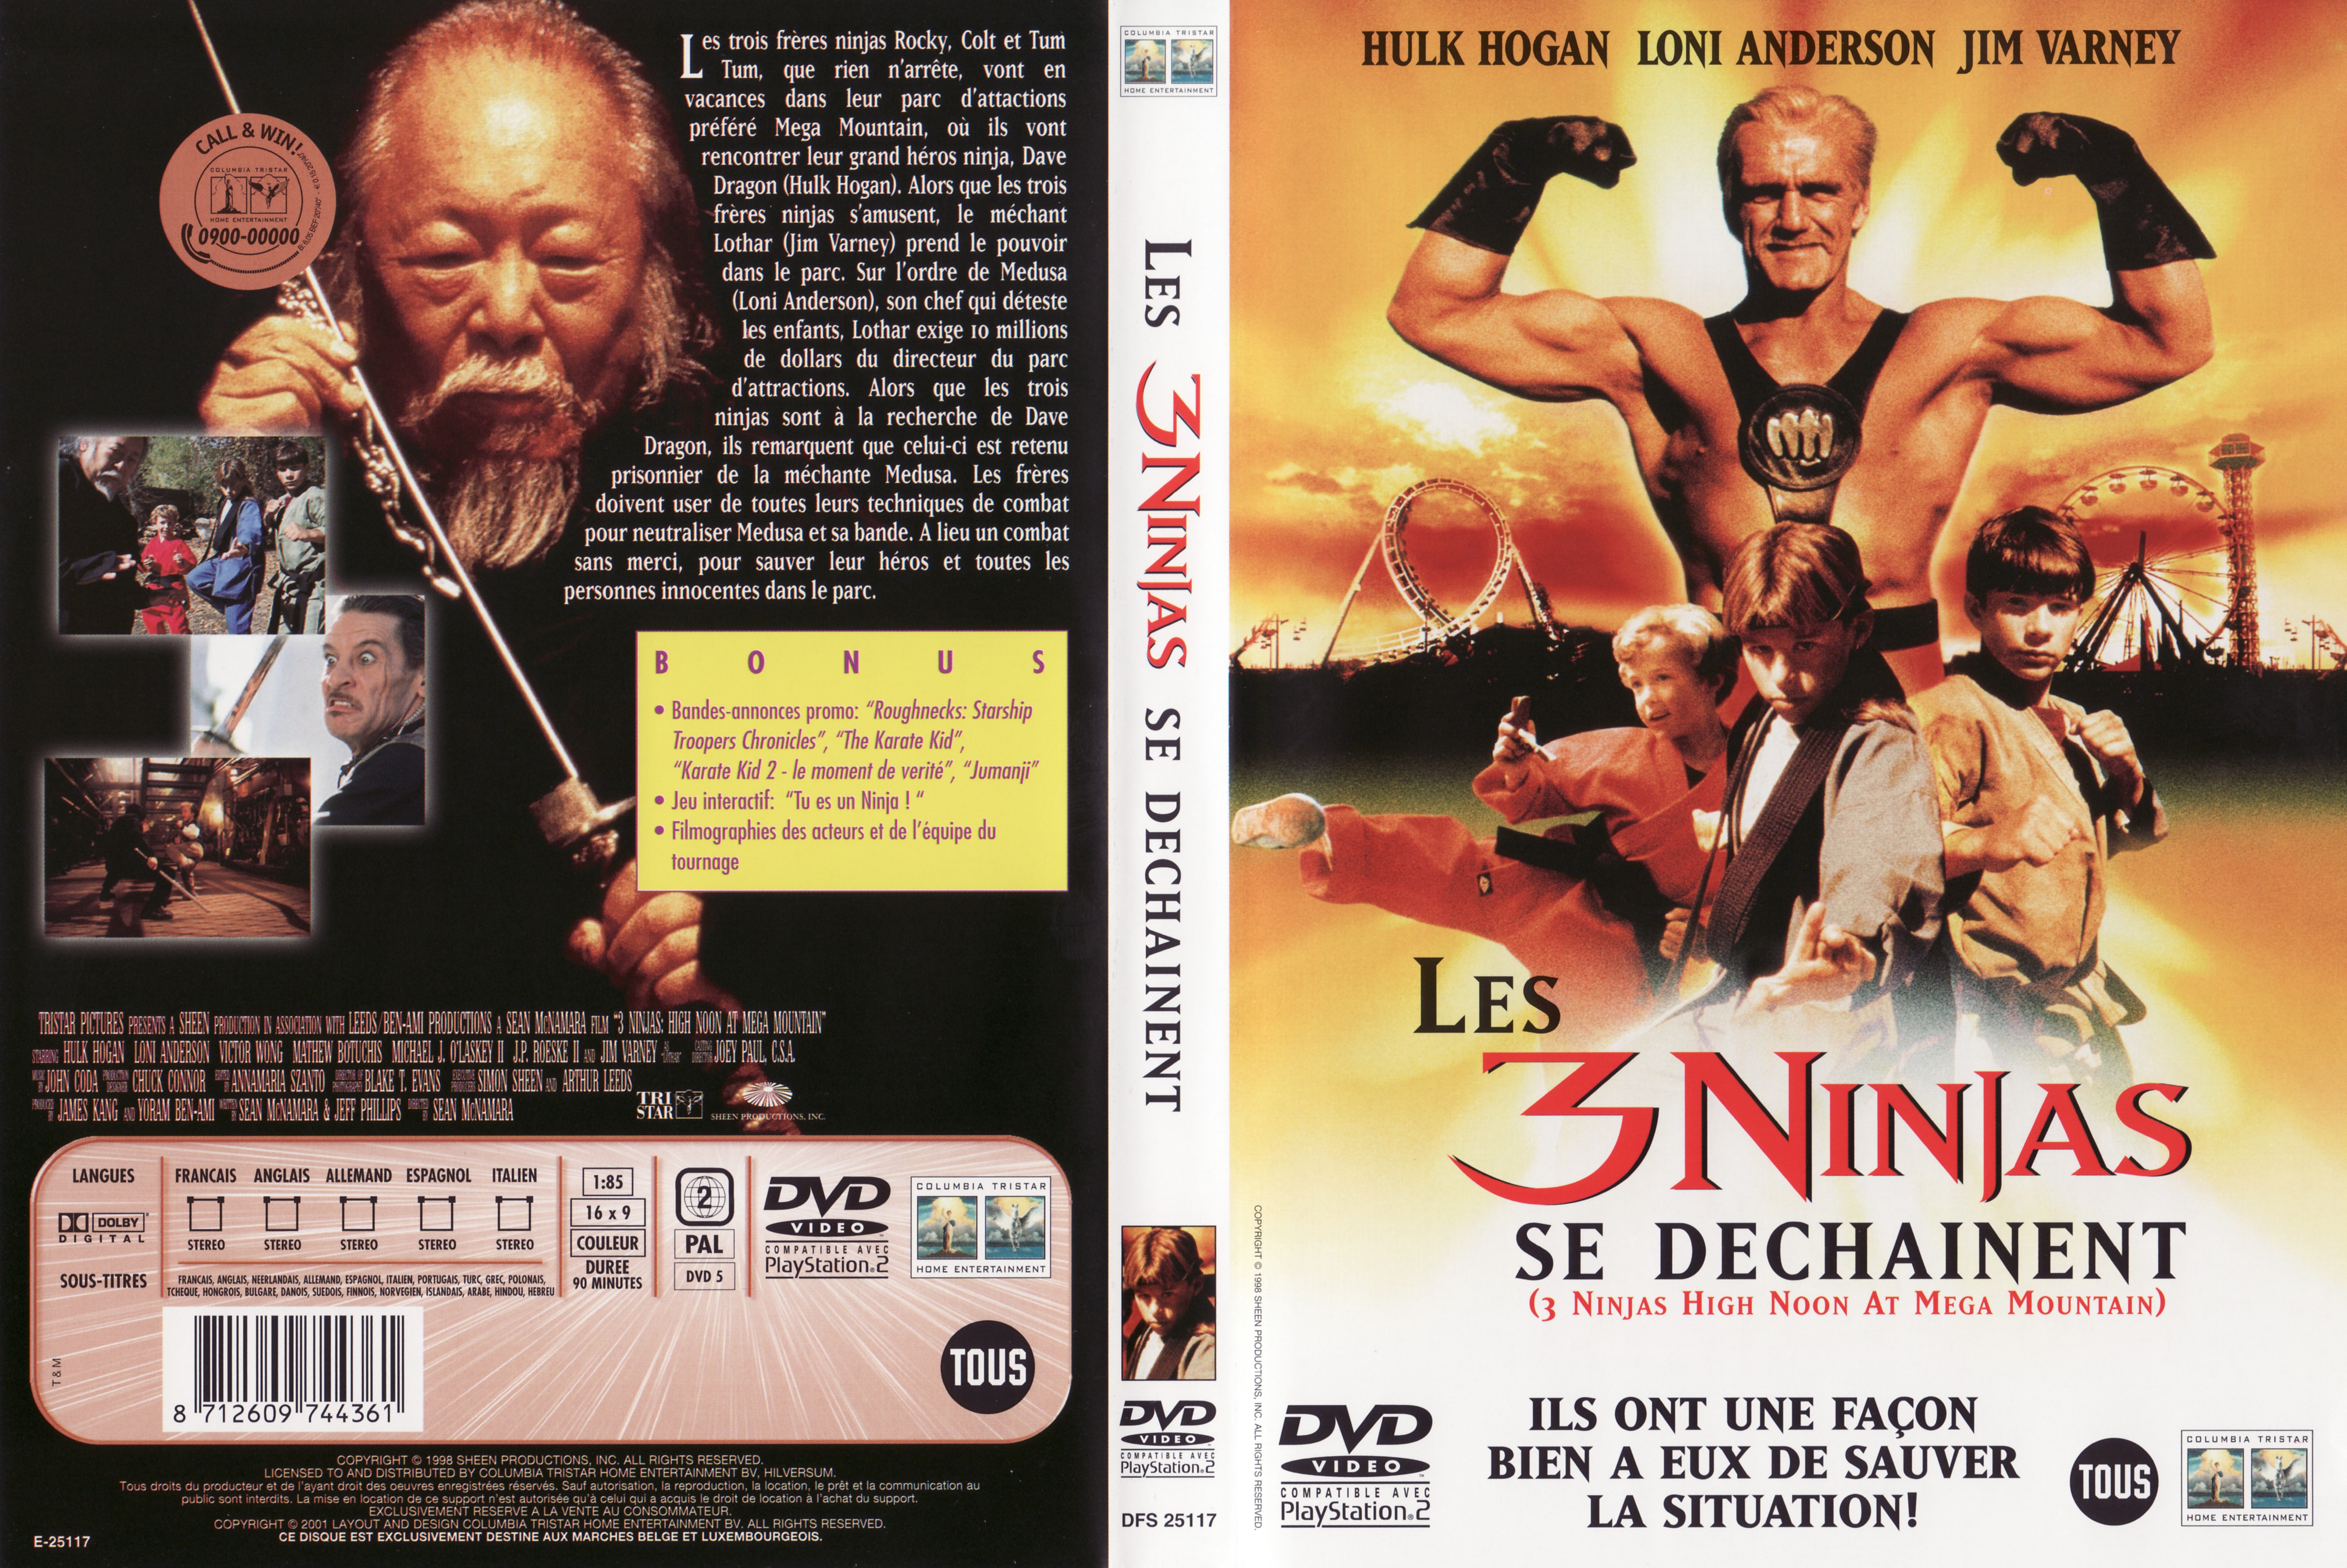 Jaquette DVD Les 3 ninjas se dechainent v2